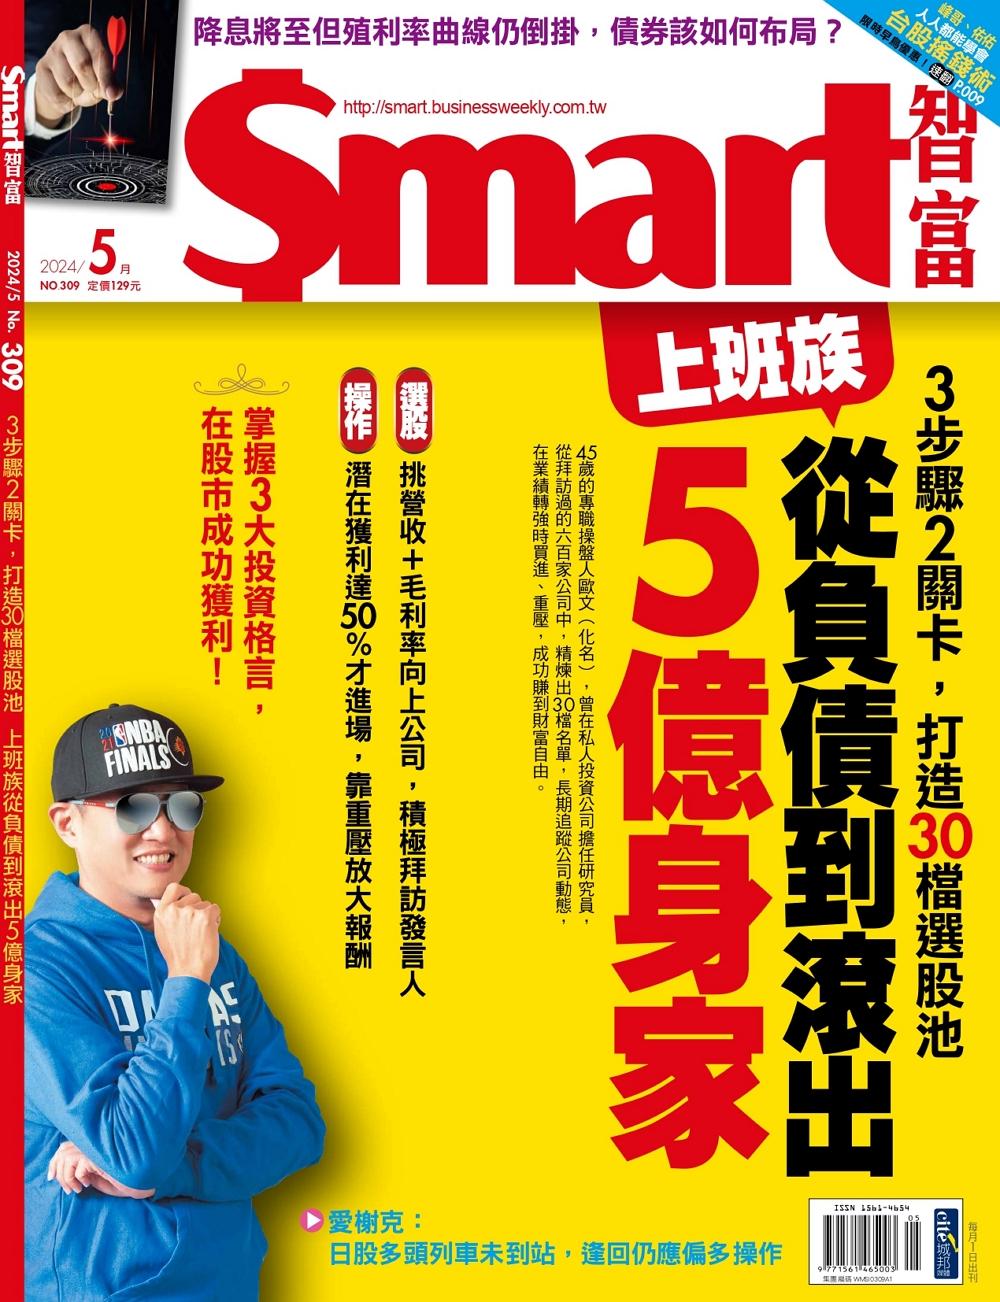 Smart智富月刊一年12期 +現金禮券100元